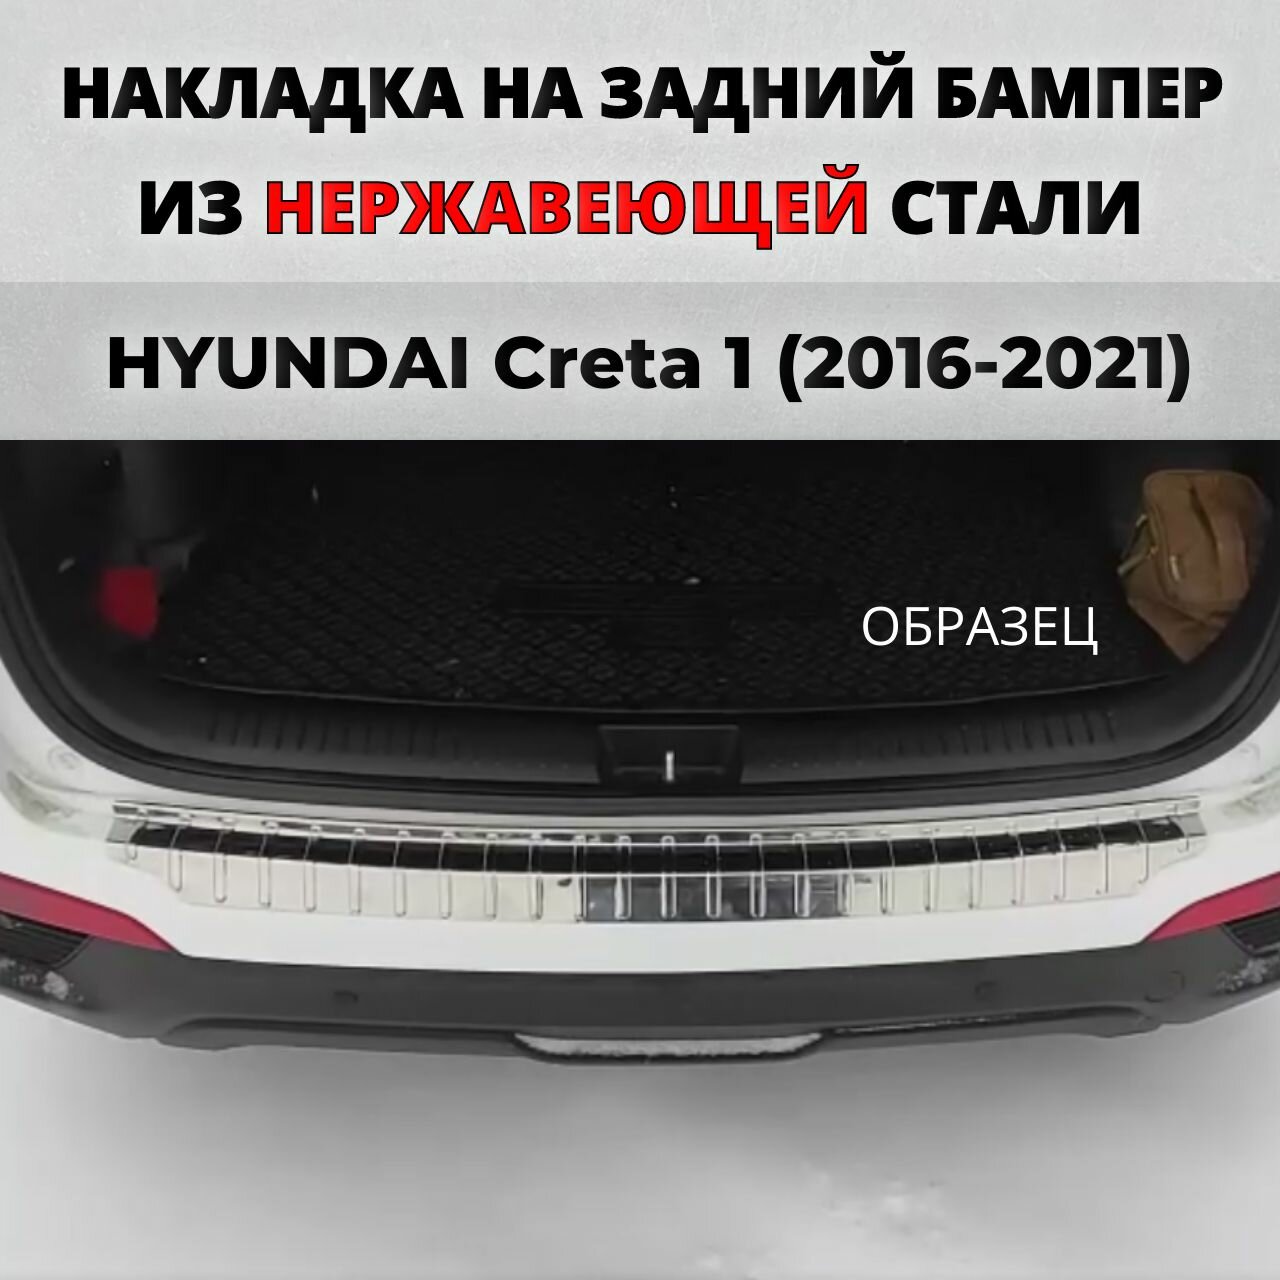 Накладка на задний бампер Хендай Крета 1 2016-2021 с загибом нерж. сталь / защита бампера HYUNDAI Creta